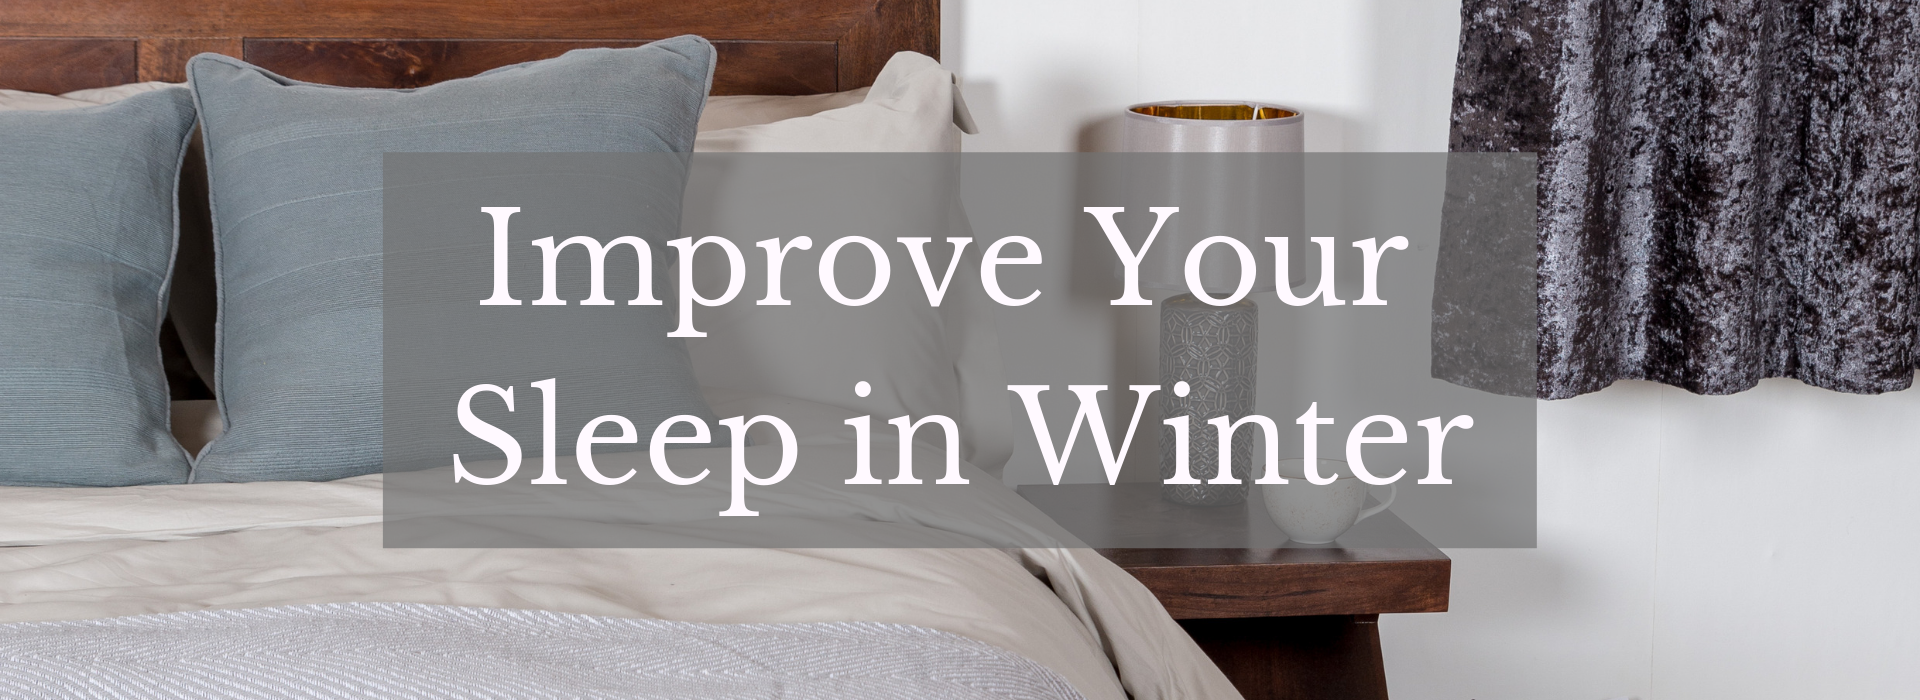 Improve your sleep in winter